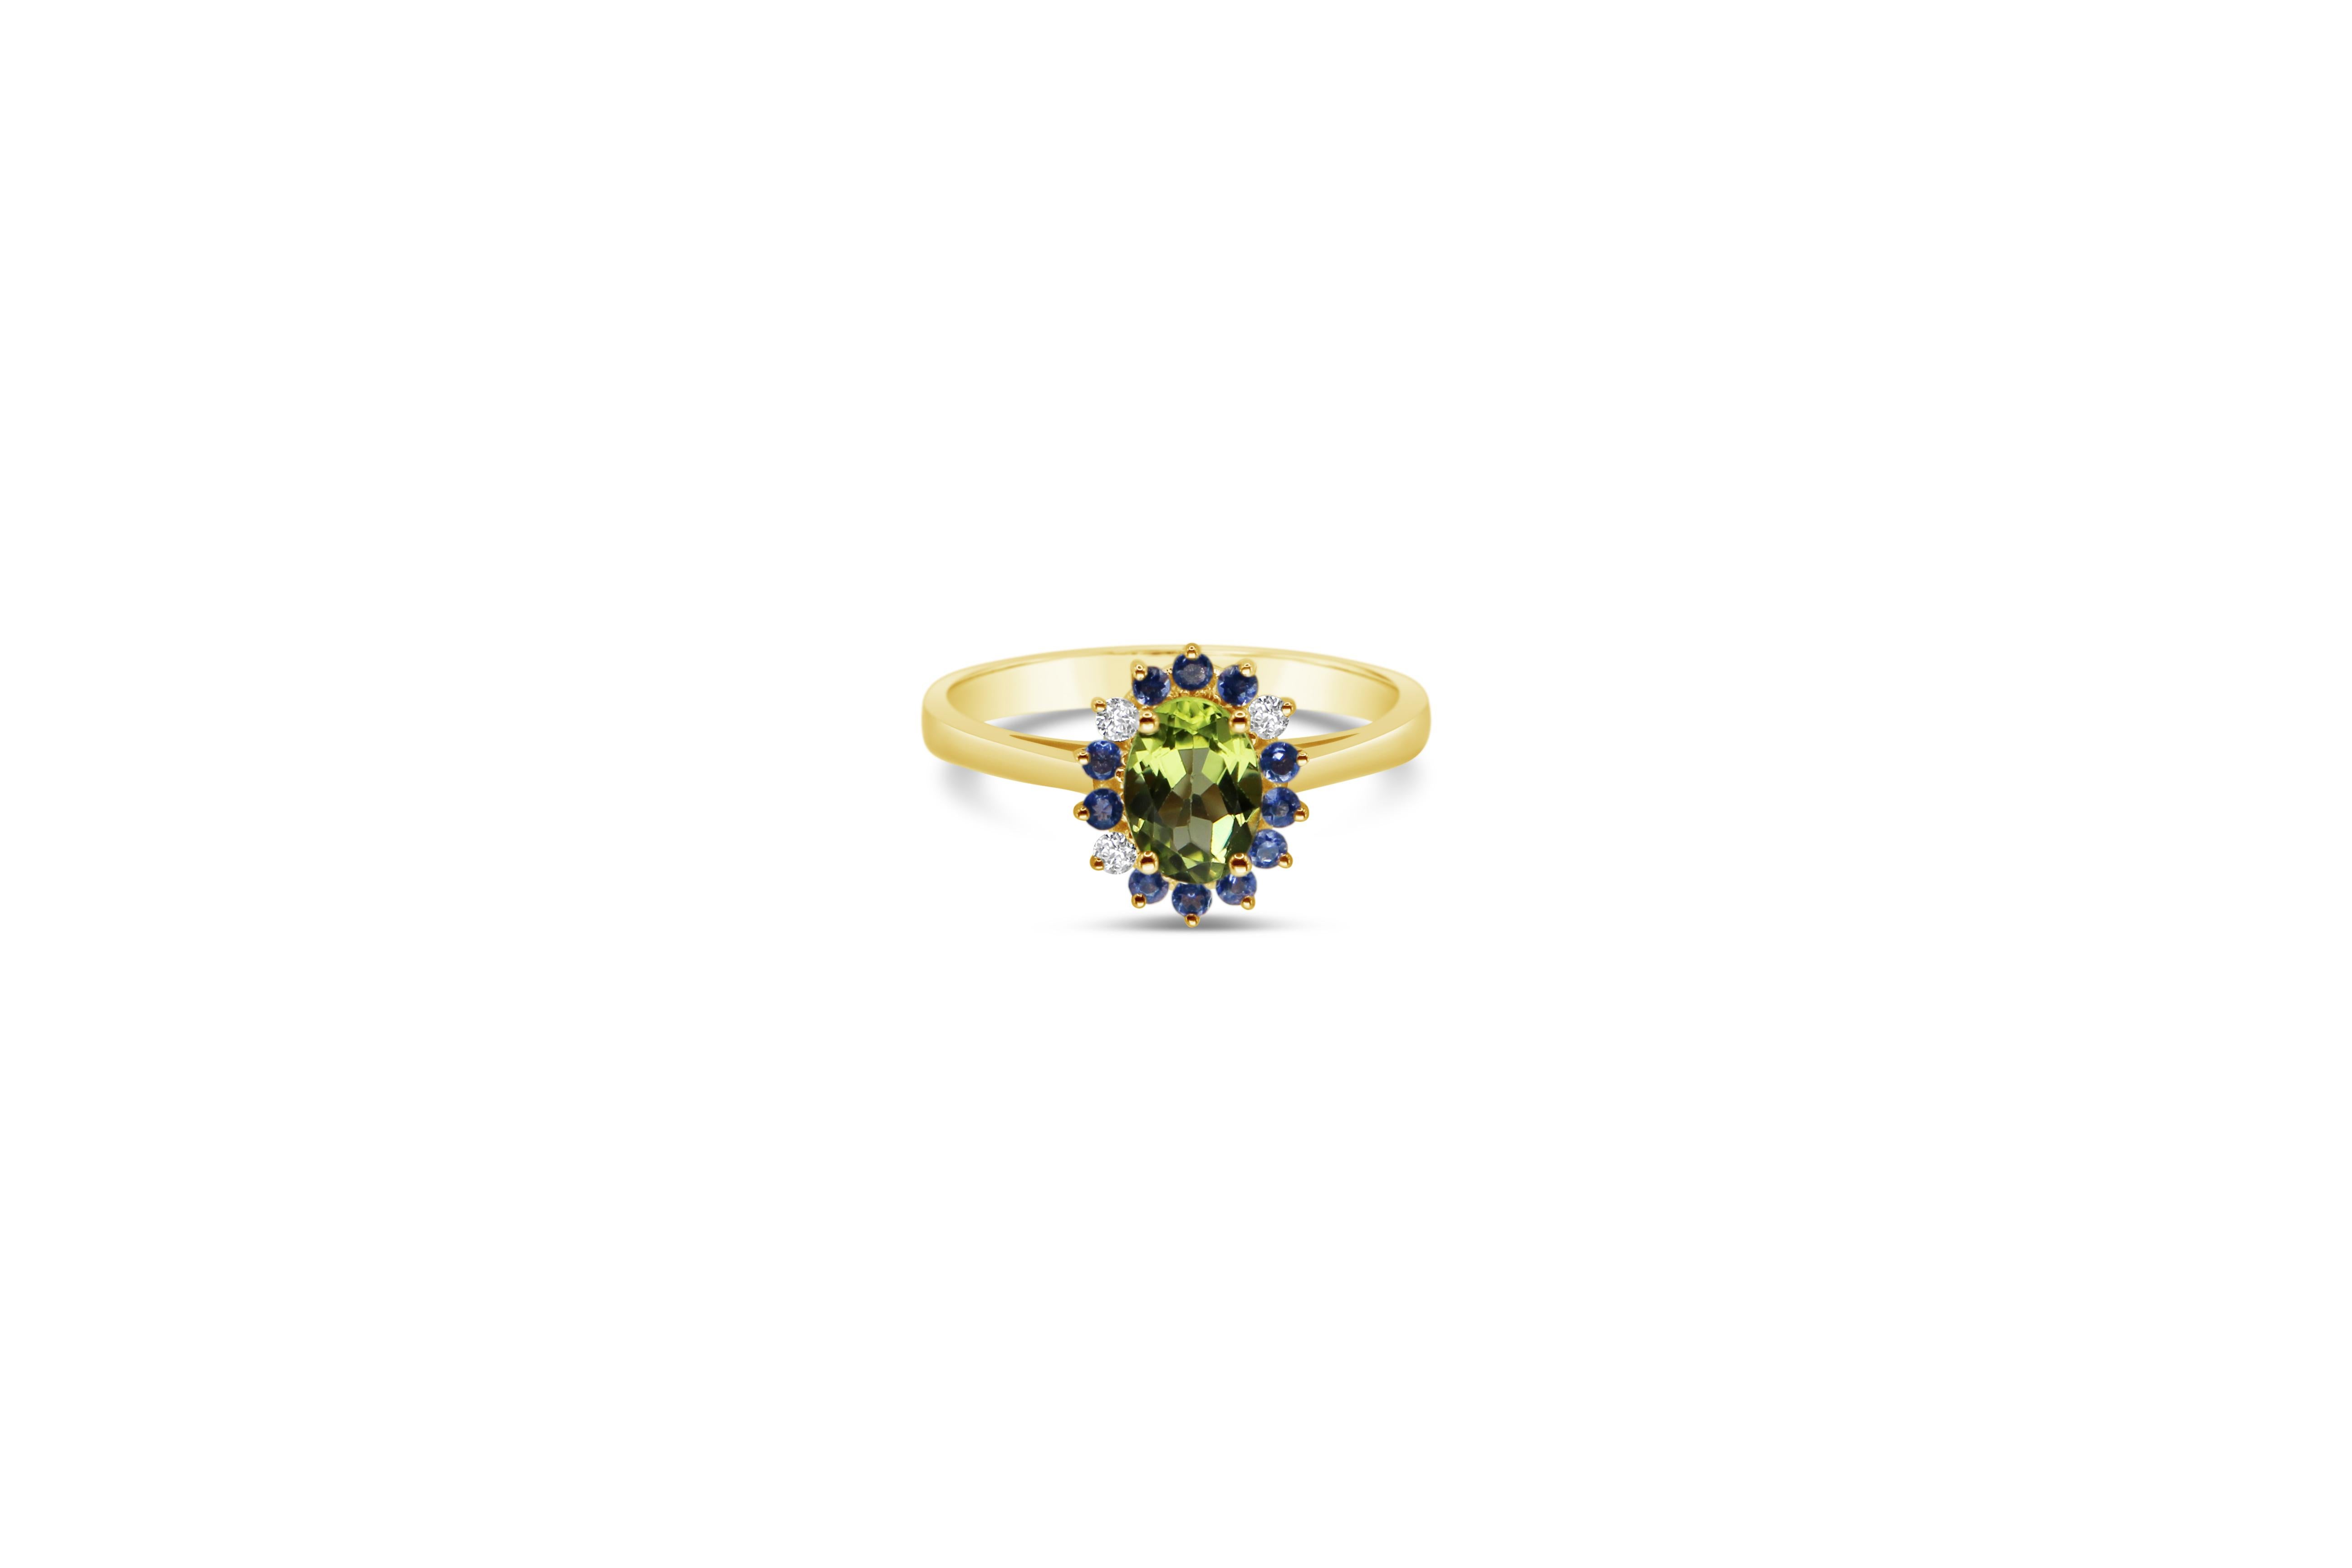 Ovaler grüner Peridot  und blauer Iolith  Cluster-Ring aus 18 Karat Gelbgold mit Diamanten mit Brillantschliff 
Ein handgefertigter Ring aus 18 Karat Gelbgold. 
Ein zartes, modernes und stilvolles Schmuckstück, das nie aus der Mode kommt und zu